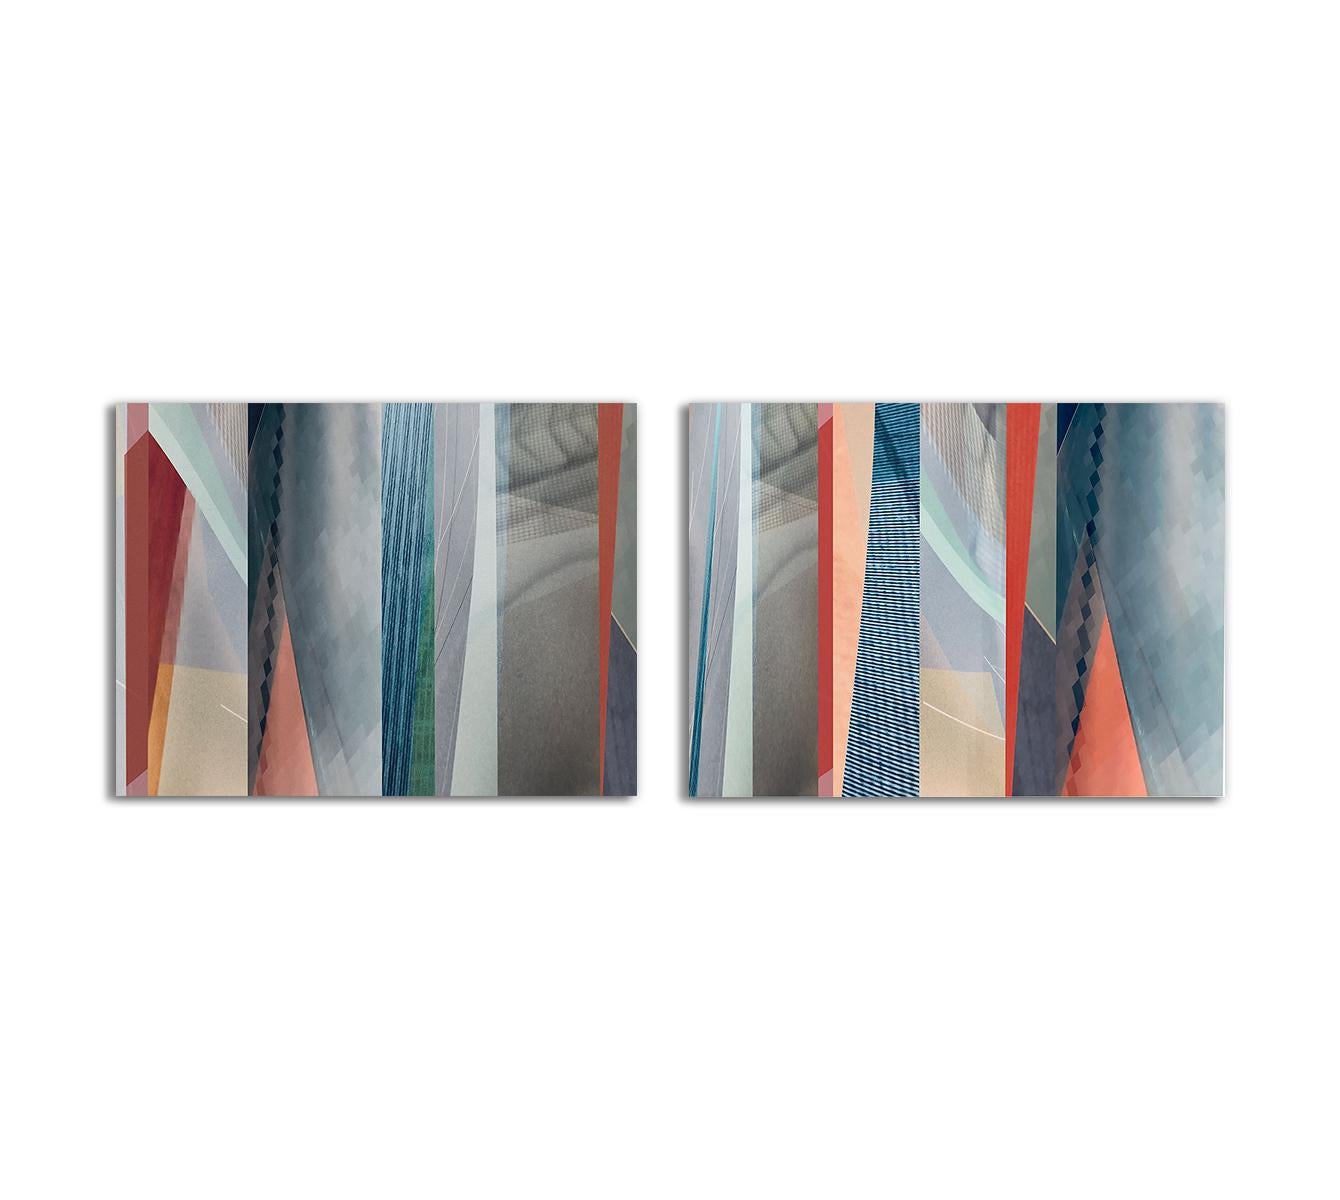 Color Photograph Monika Bravo - Parallel Fields #4 and #5. Photographie en couleur abstraite à tirage limité